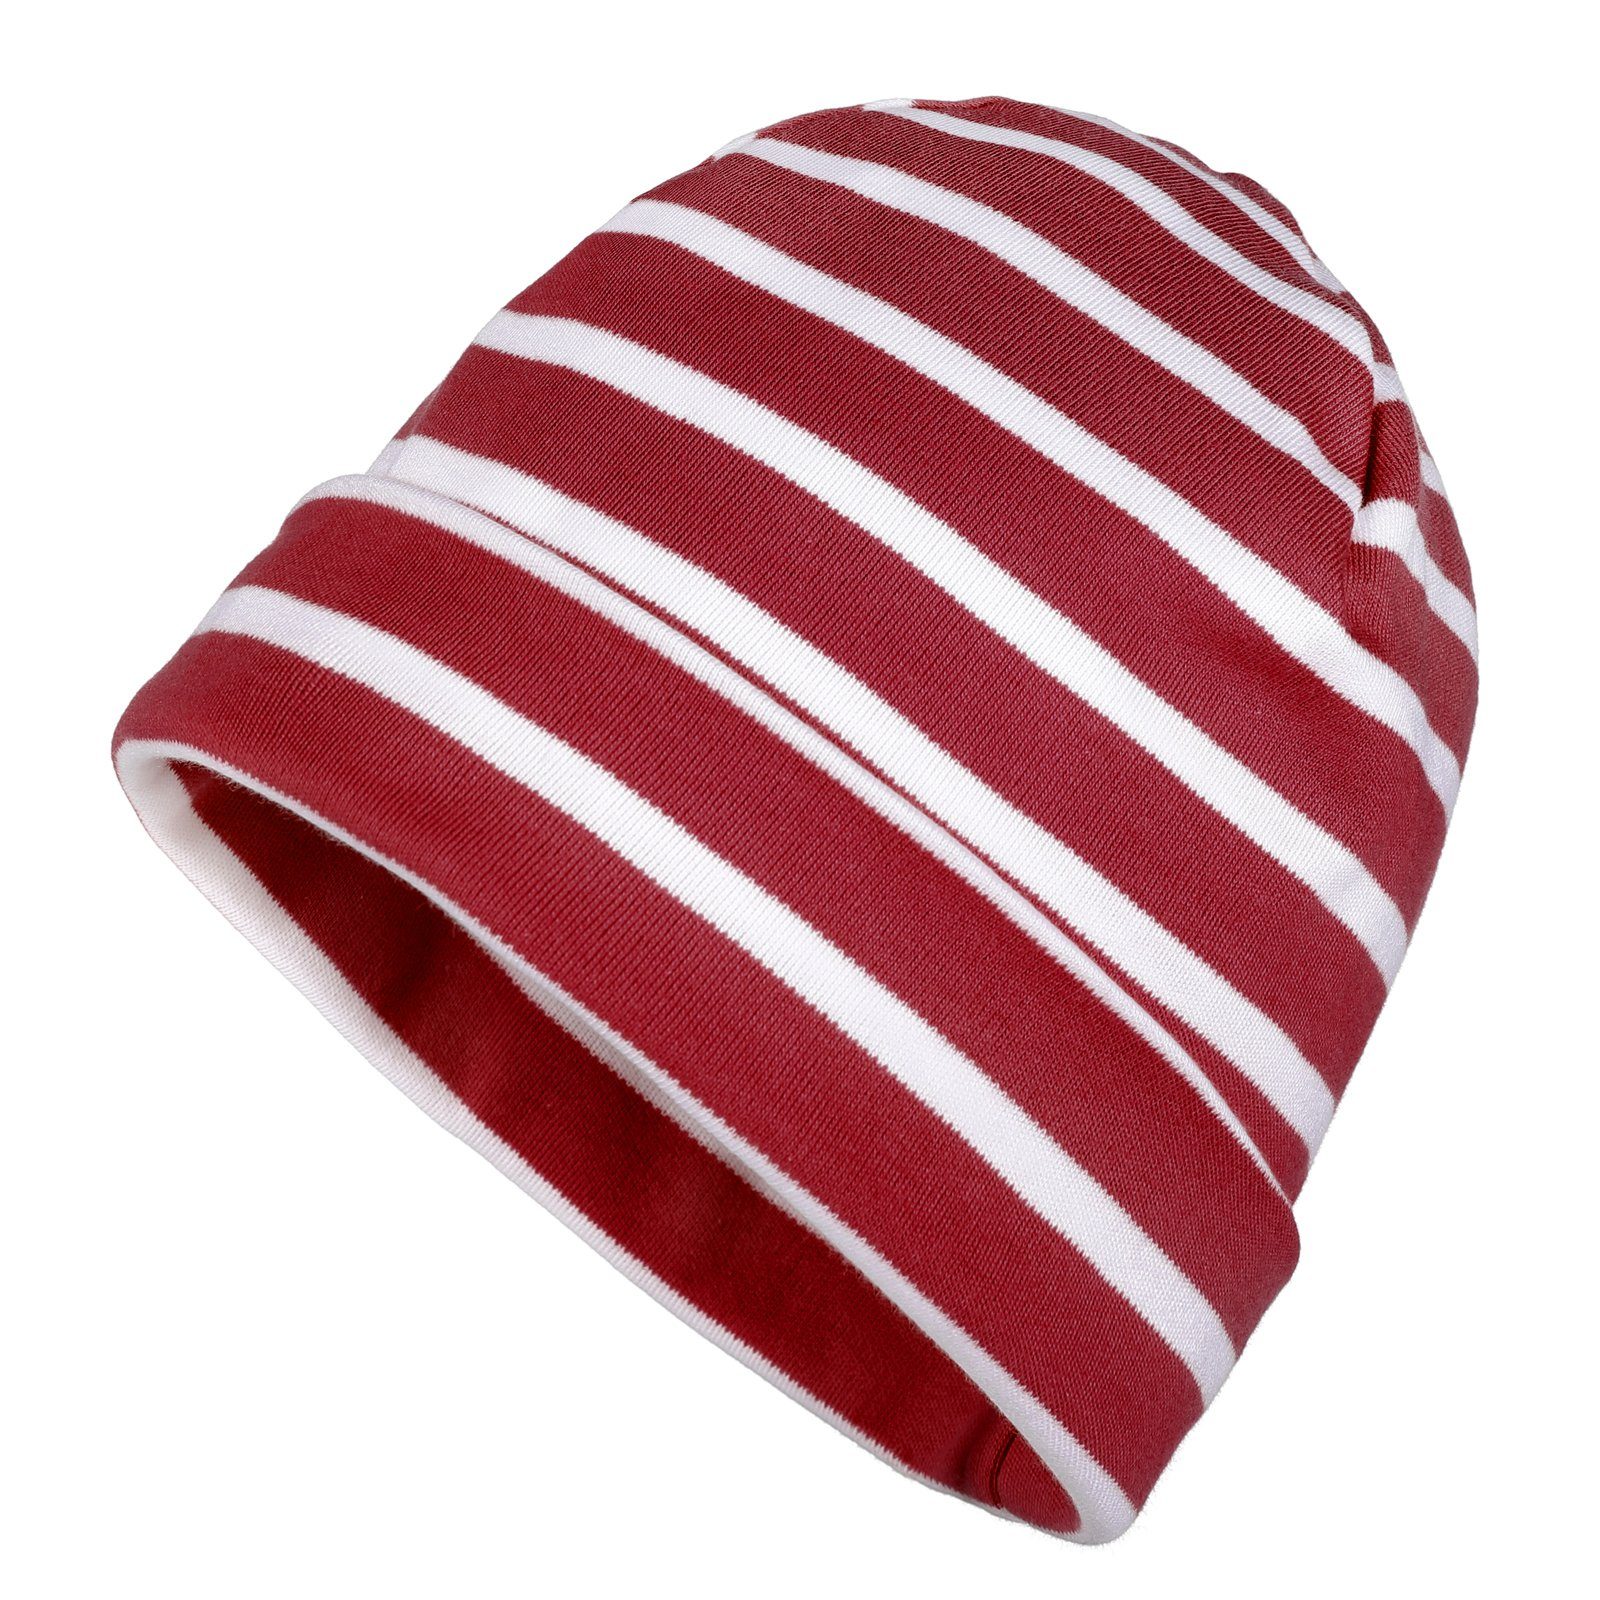 modAS Strickmütze Unisex Mütze Streifen für Kinder & Erwachsene - Ringelmütze Baumwolle (82) rotmelange / weiß | Strickmützen